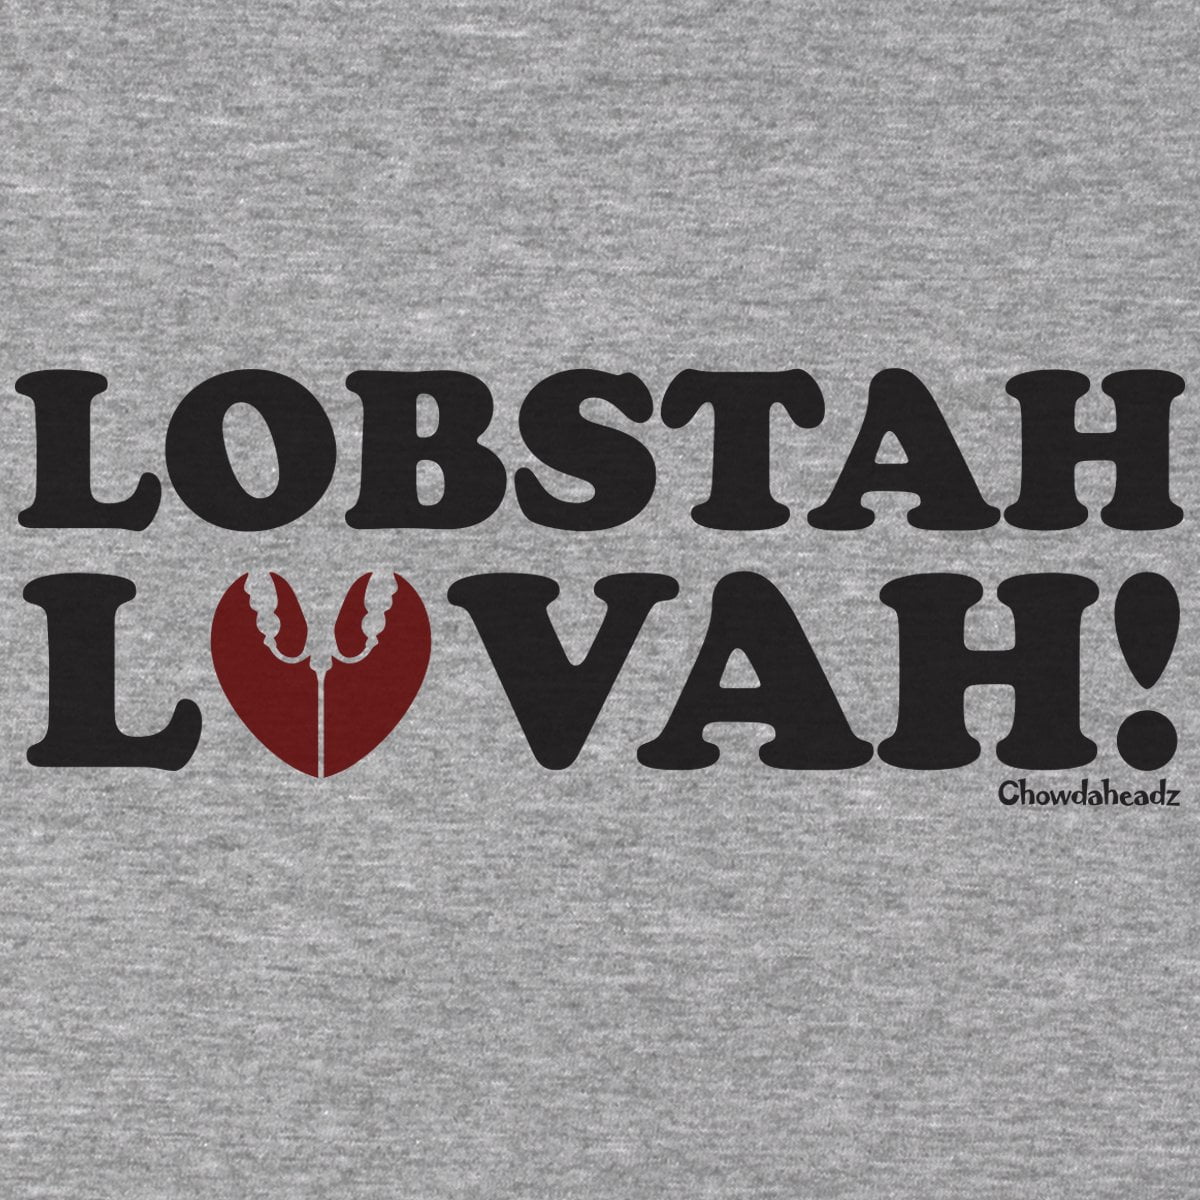 Lobstah Lovah T-shirt - Chowdaheadz